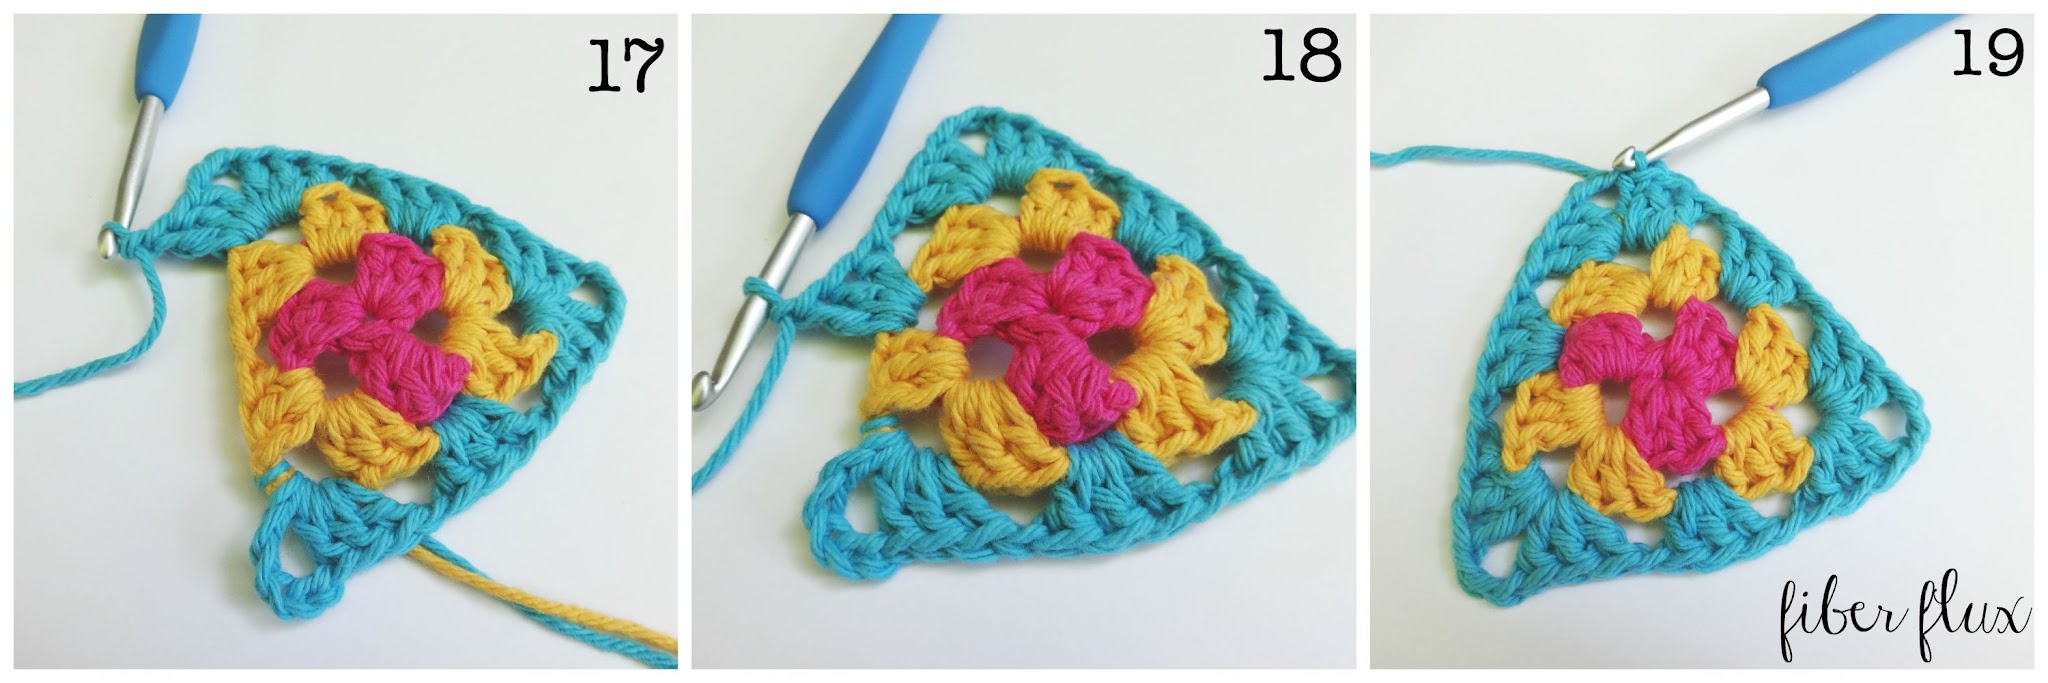 Crochet A Granny Triangle